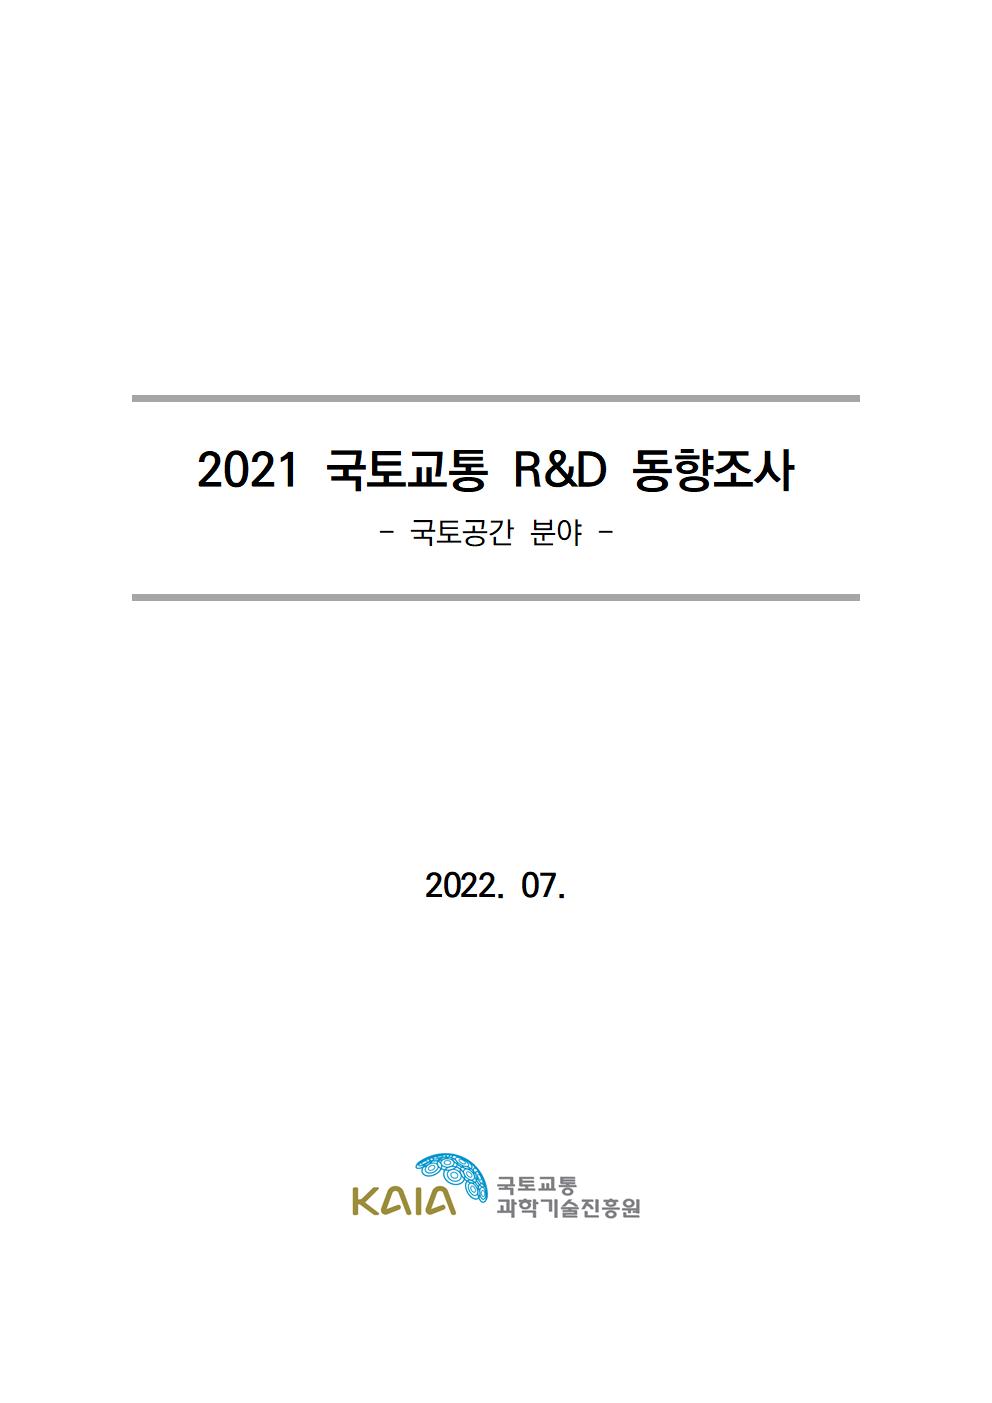 [동향조사] 2021 국토교통 R&D 동향조사 보고서(국토공간 분야) 